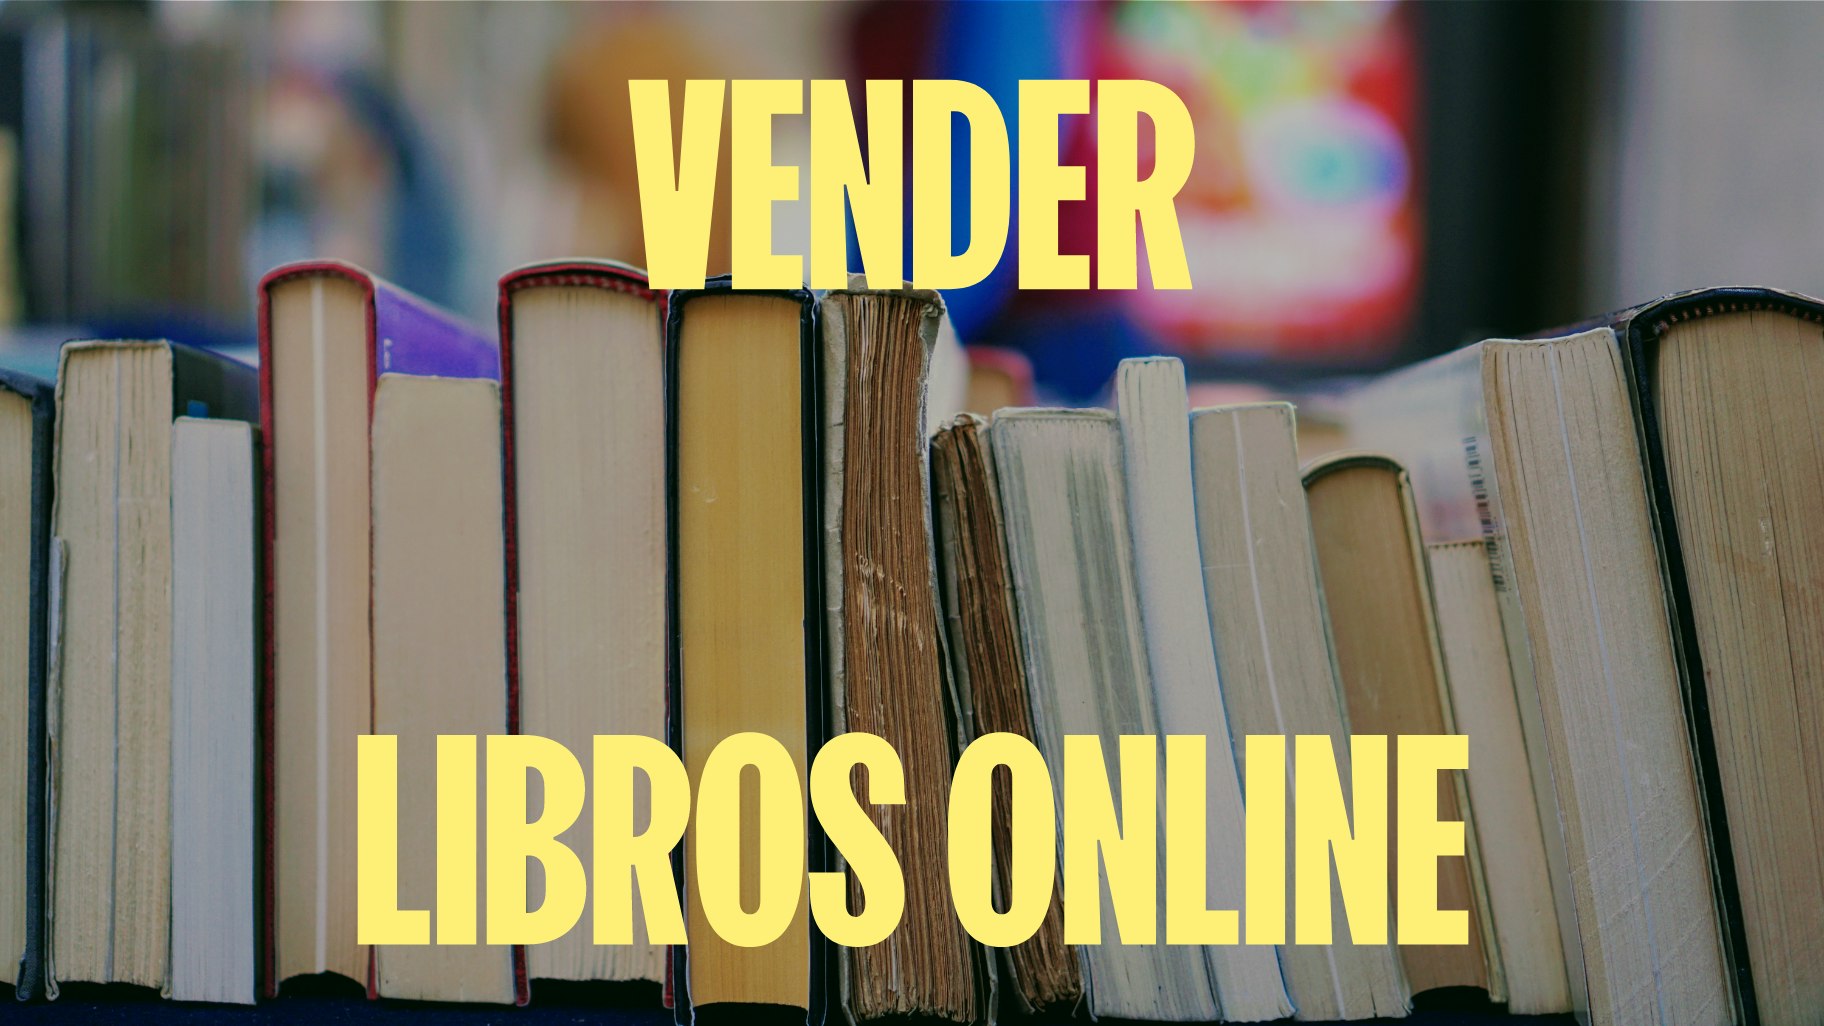 vender libros online